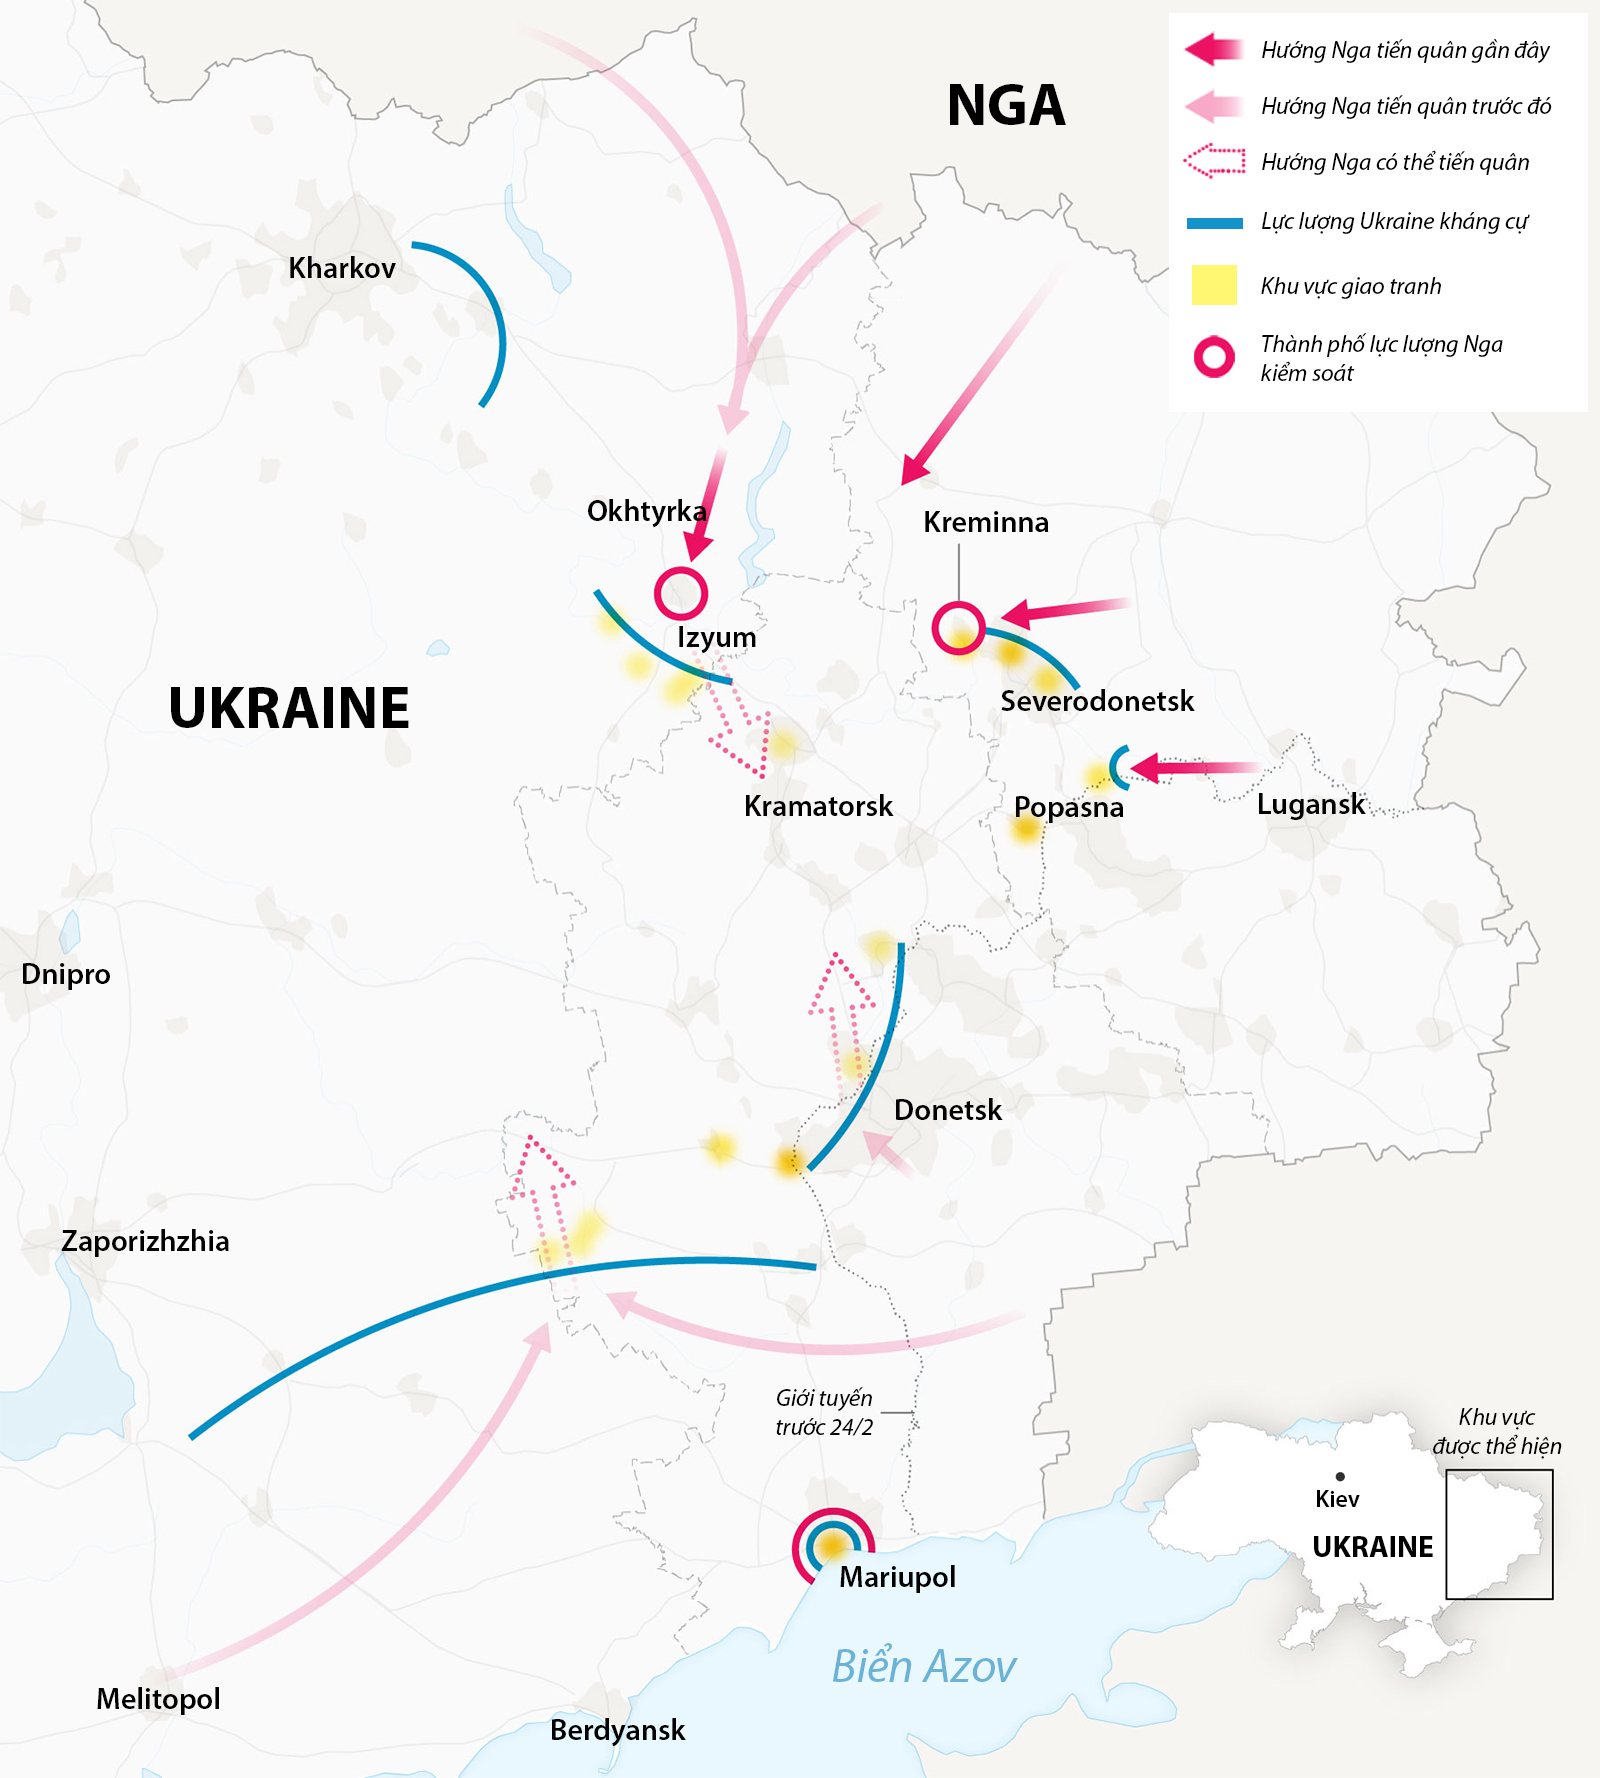 Hướng thọc sâu của Nga ở miền đông Ukraine. Đồ họa: NY Times.